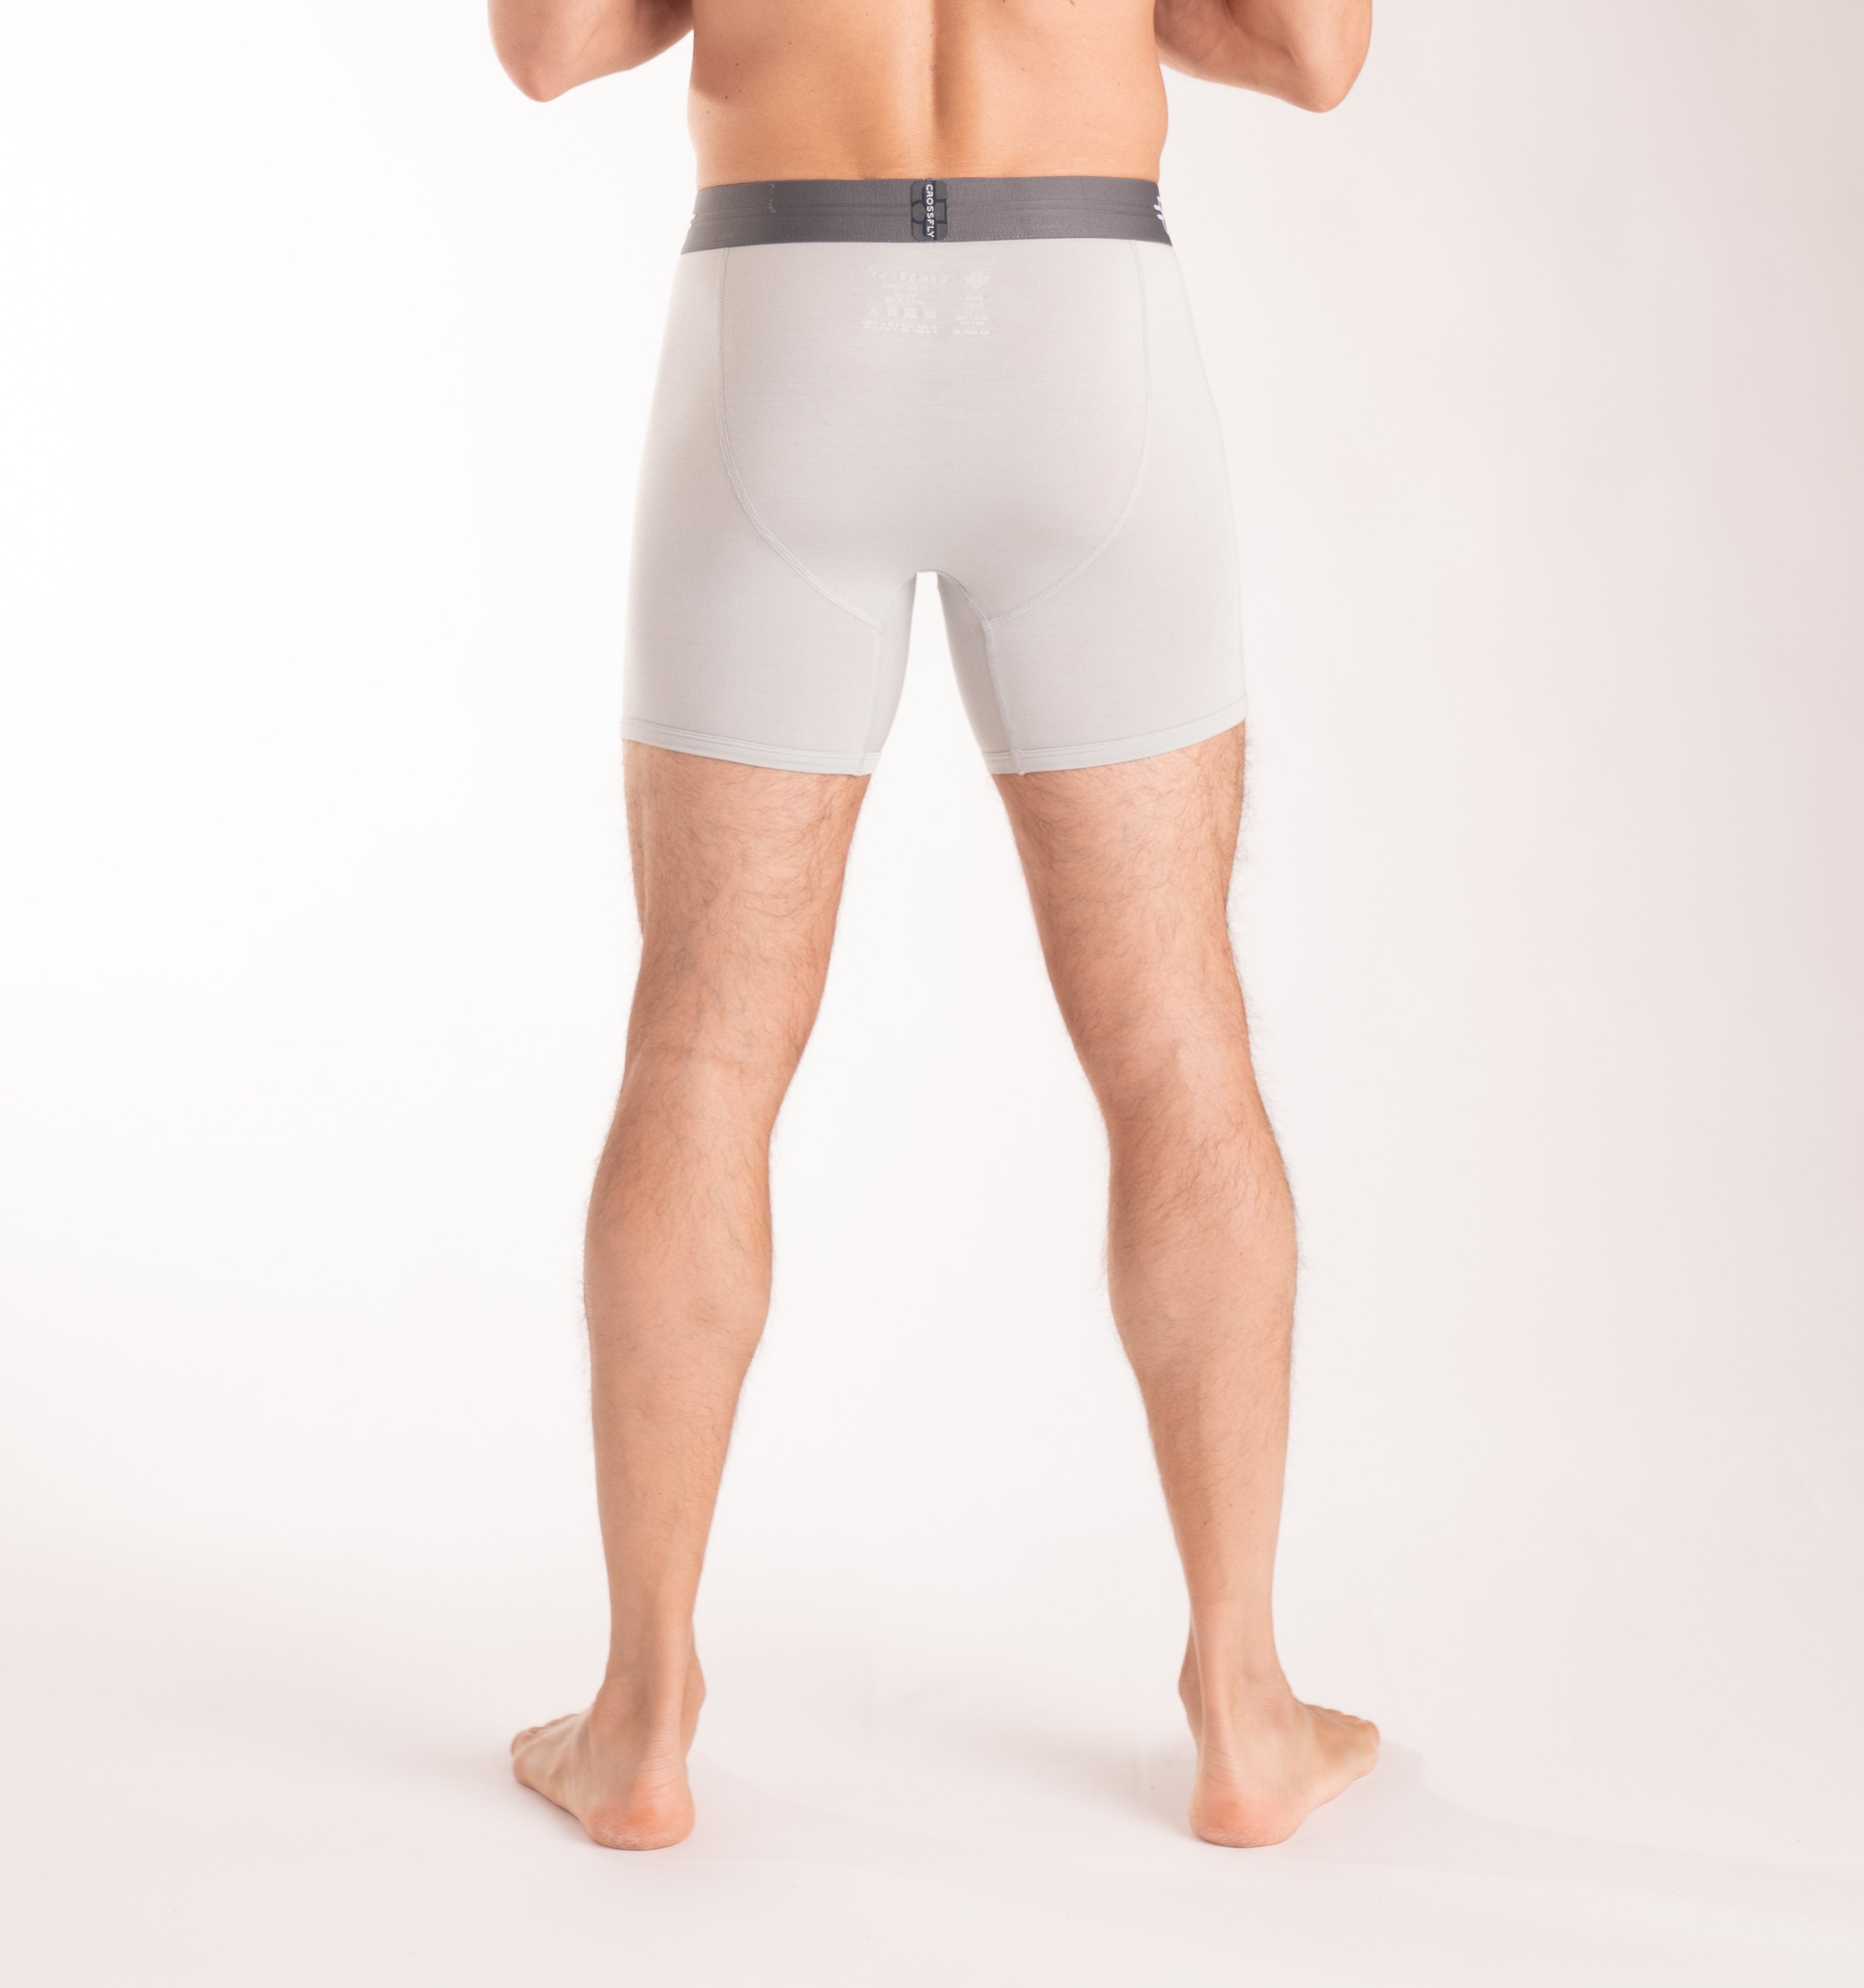 Crossfly Men's Underwear IKON X 6 Boxer Silver/Charcoal Modal